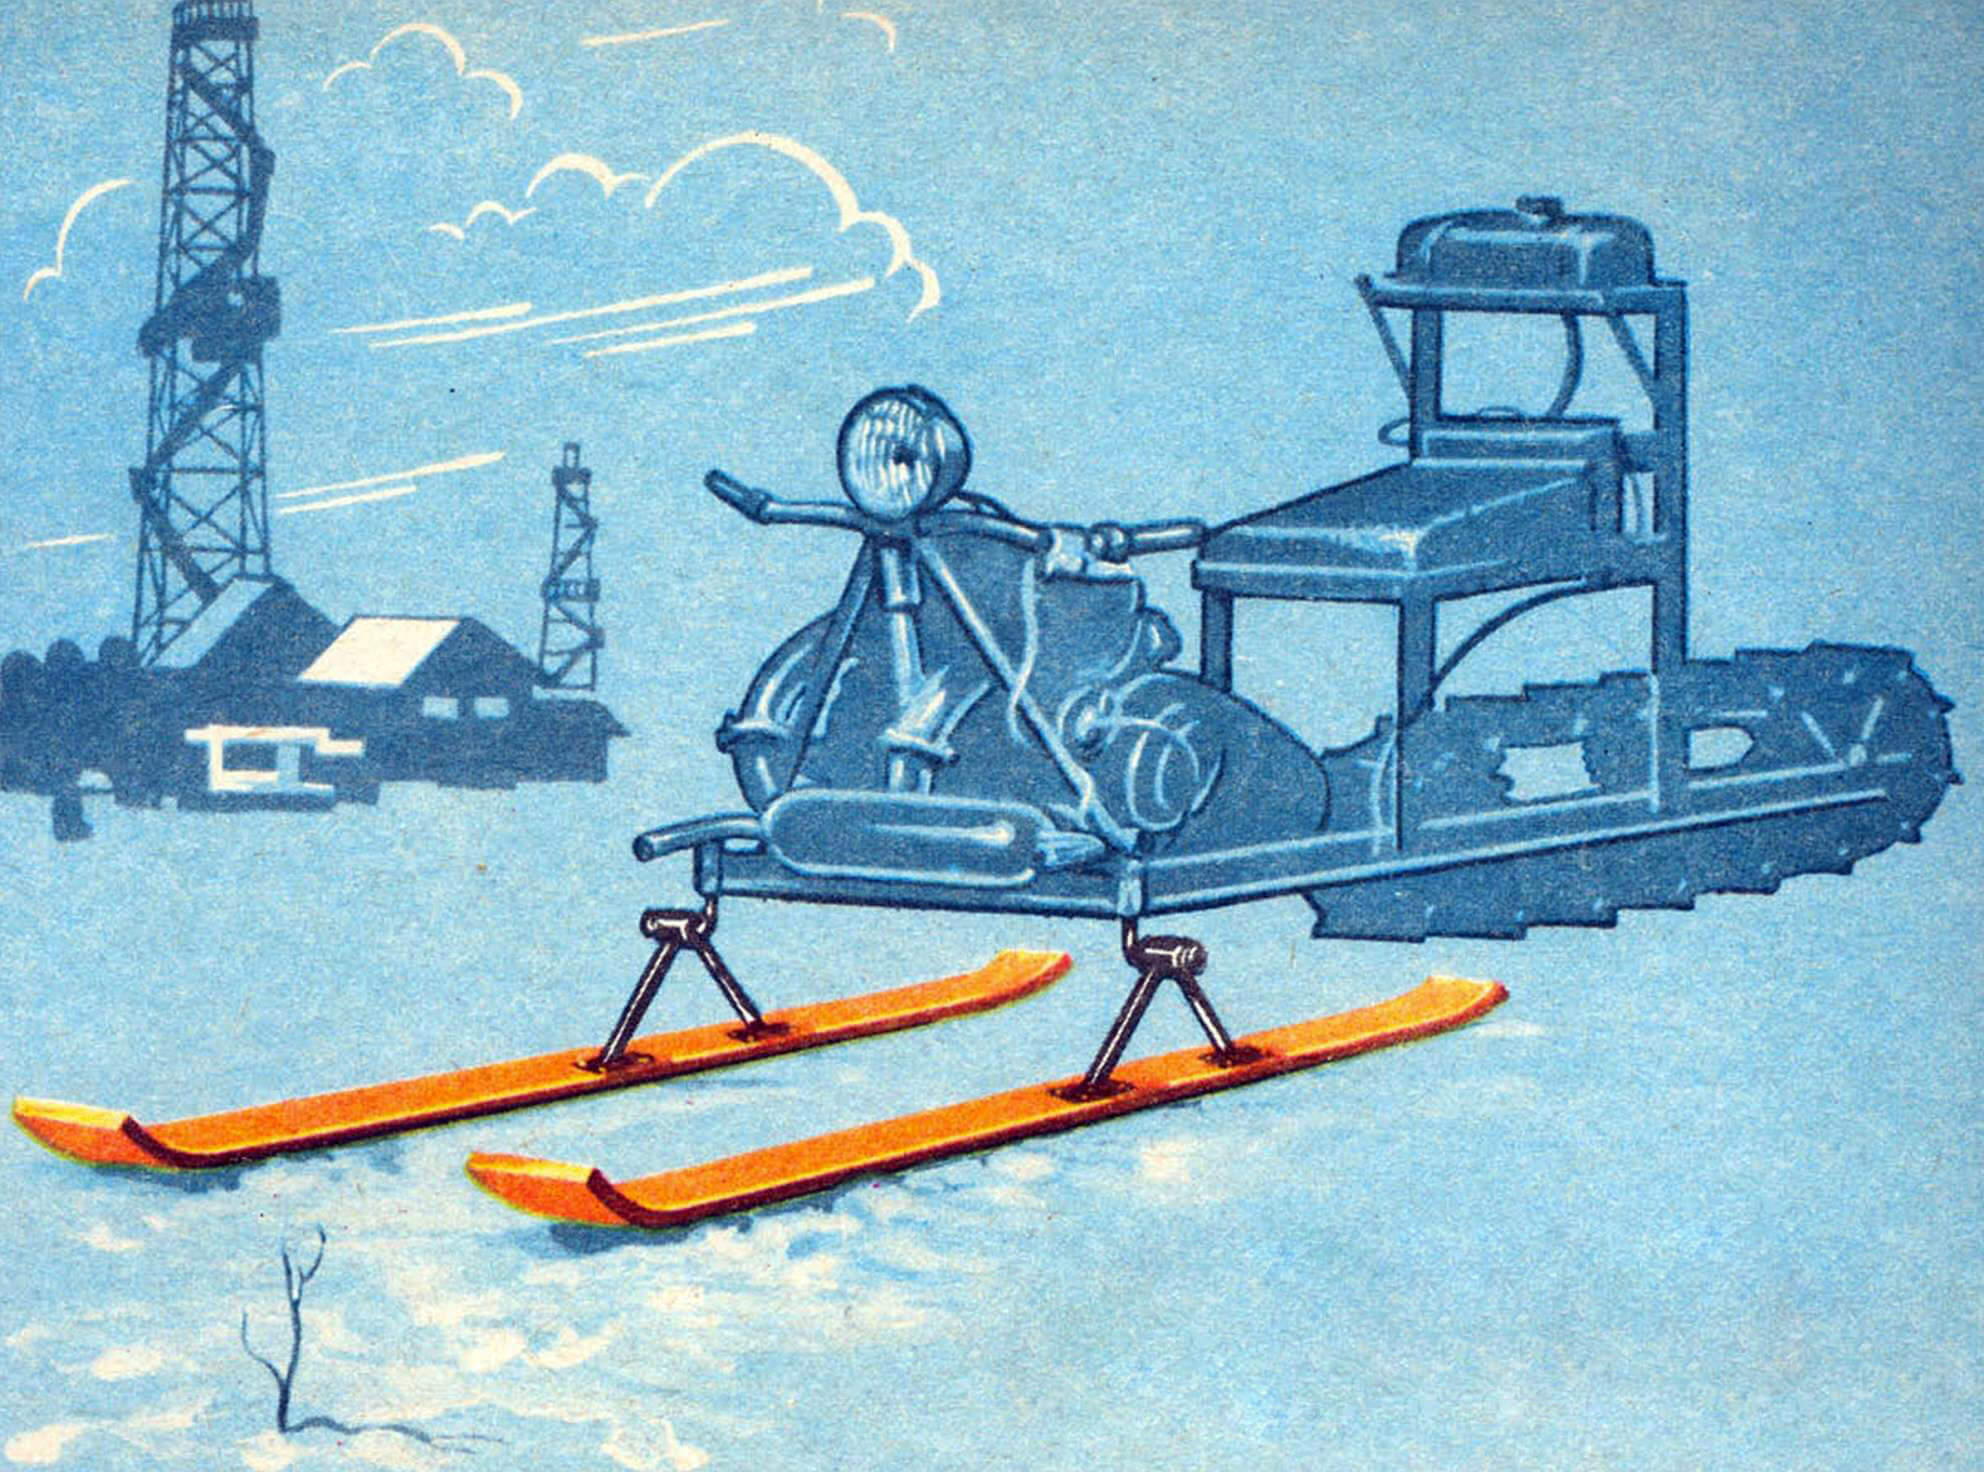 Зимний вариант. Гусеница в сочетании с лыжами обеспечивает высокую проходимость в условиях «белого бездорожья».